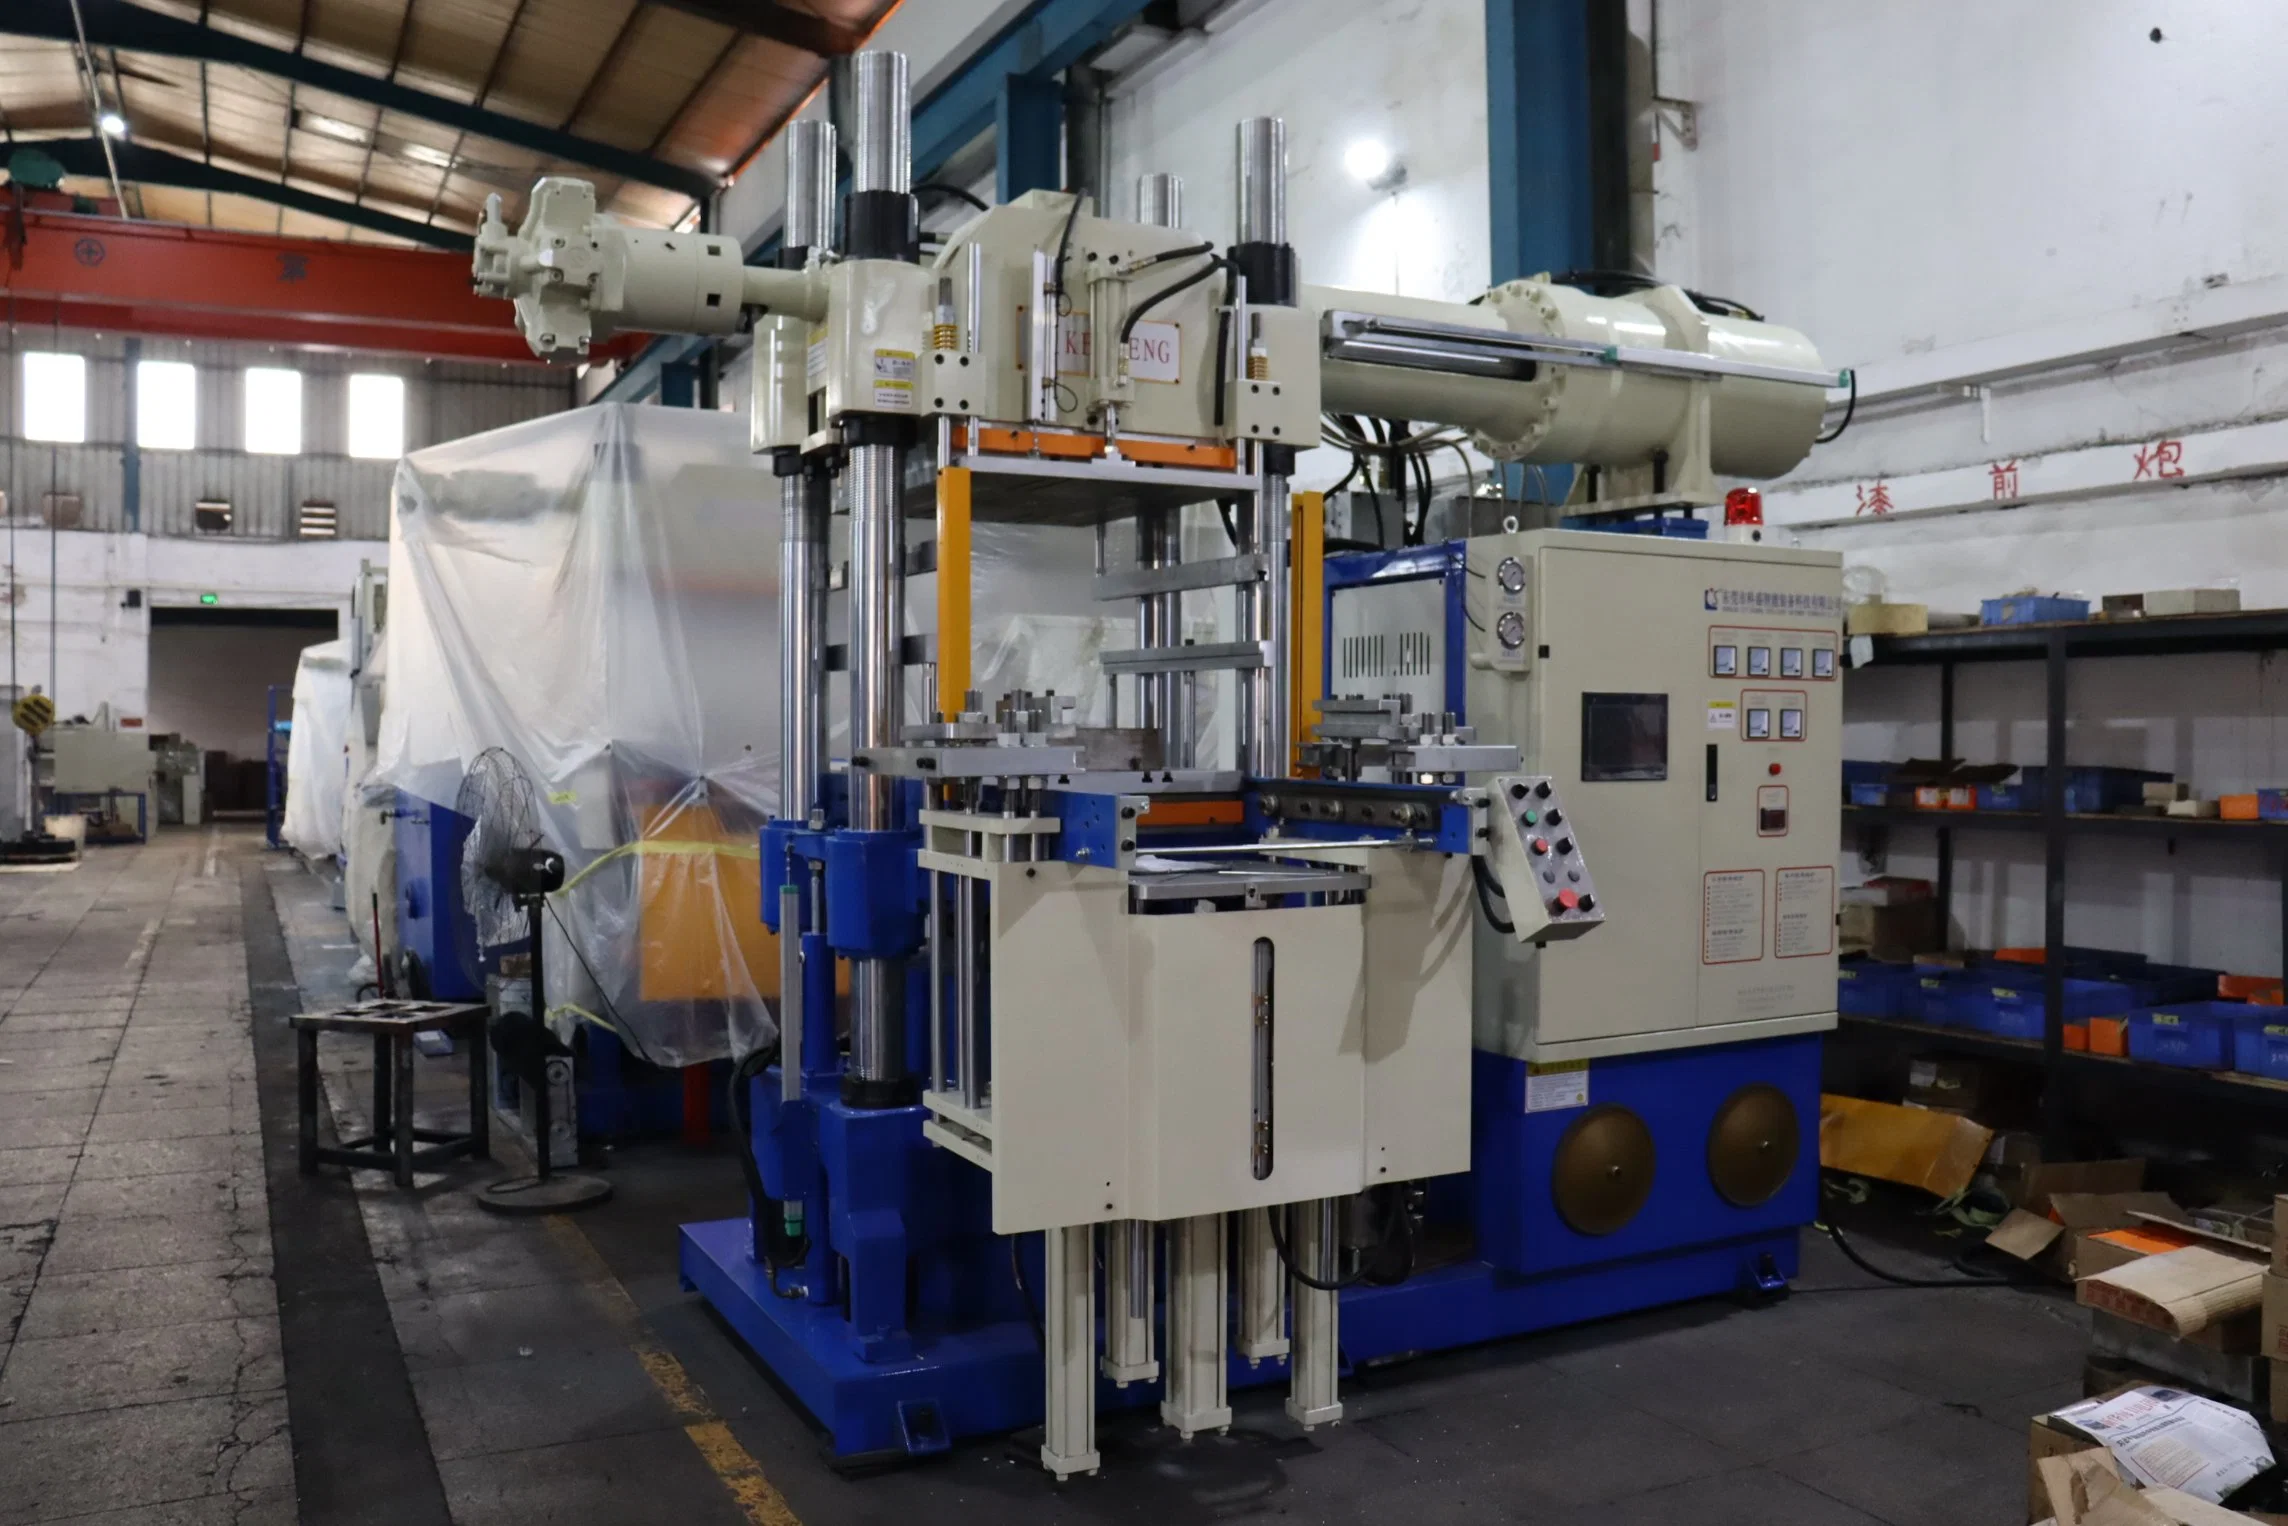 Horizontal Rubber Injection Molding Machine, Rubber Plate Vulcanizing Press Machine, Rubber Product Making Machinery